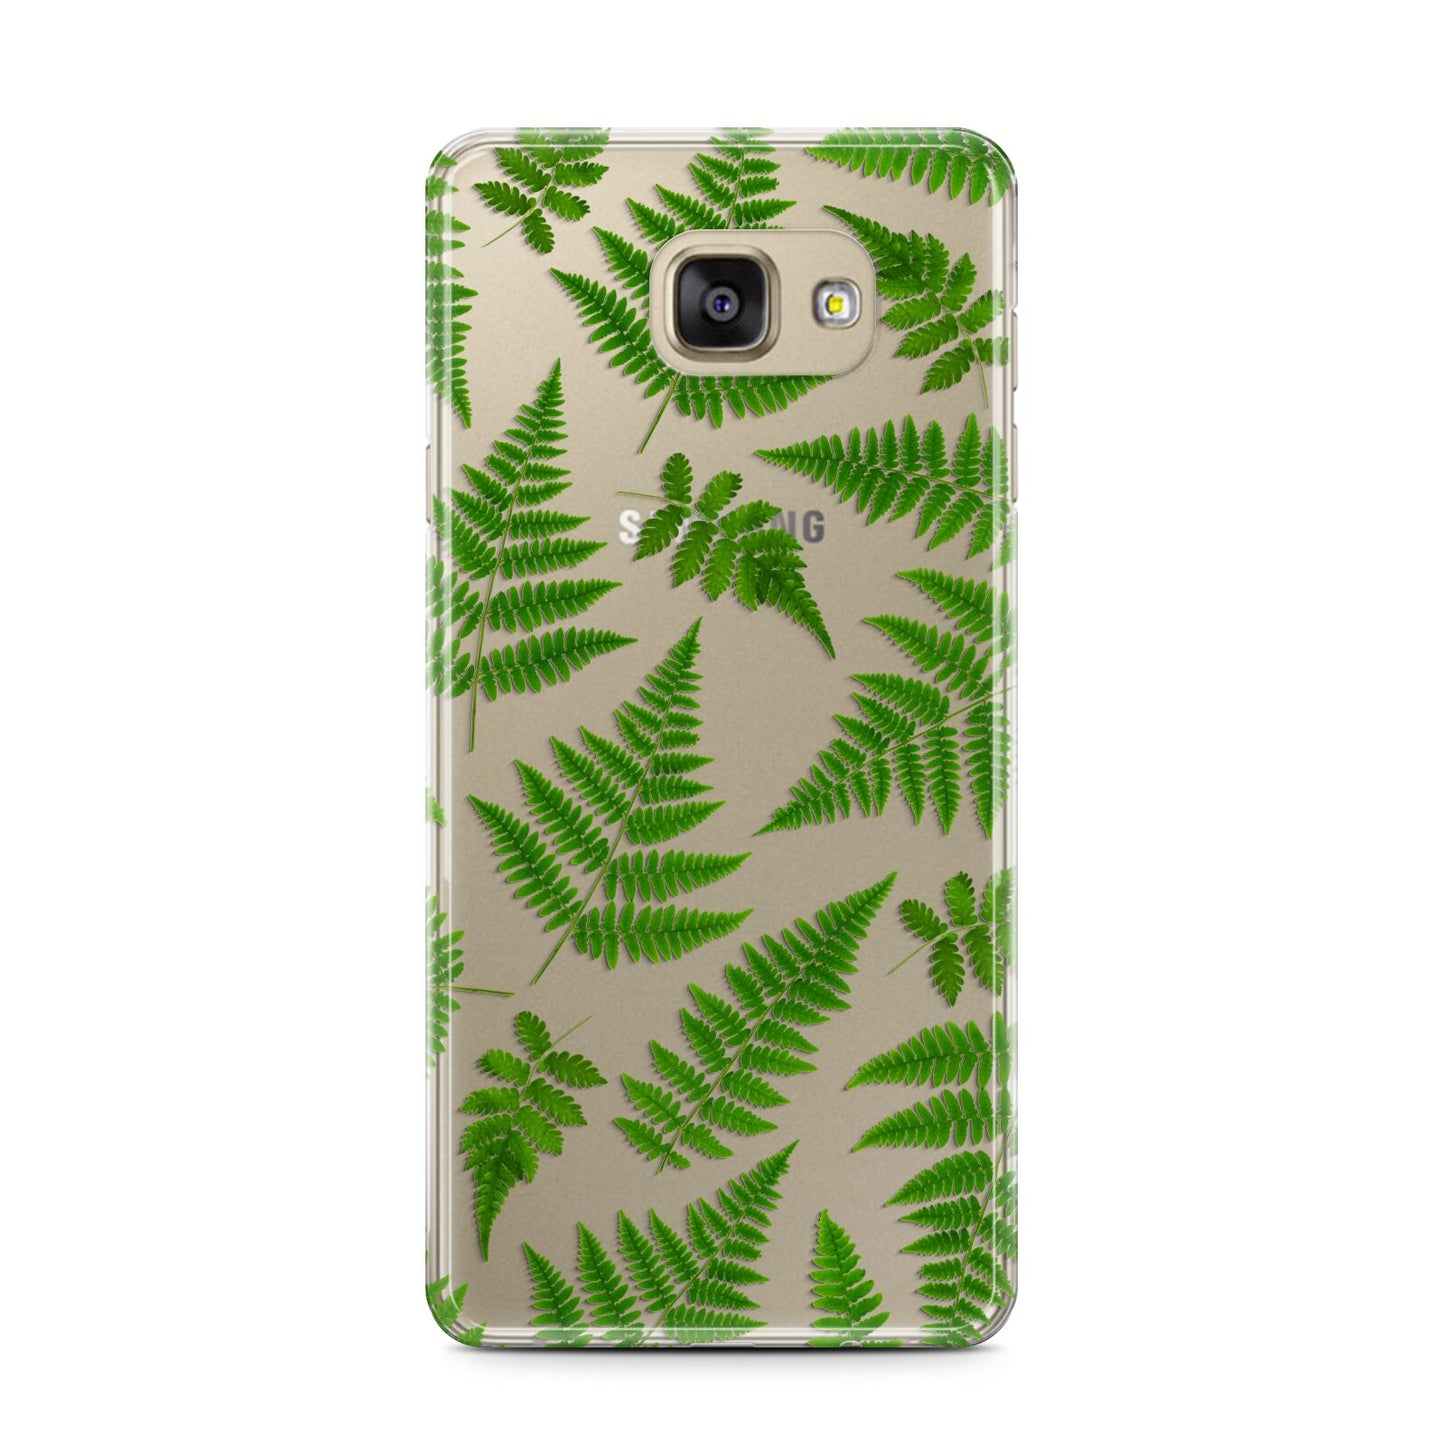 Fern Leaf Samsung Galaxy A7 2016 Case on gold phone